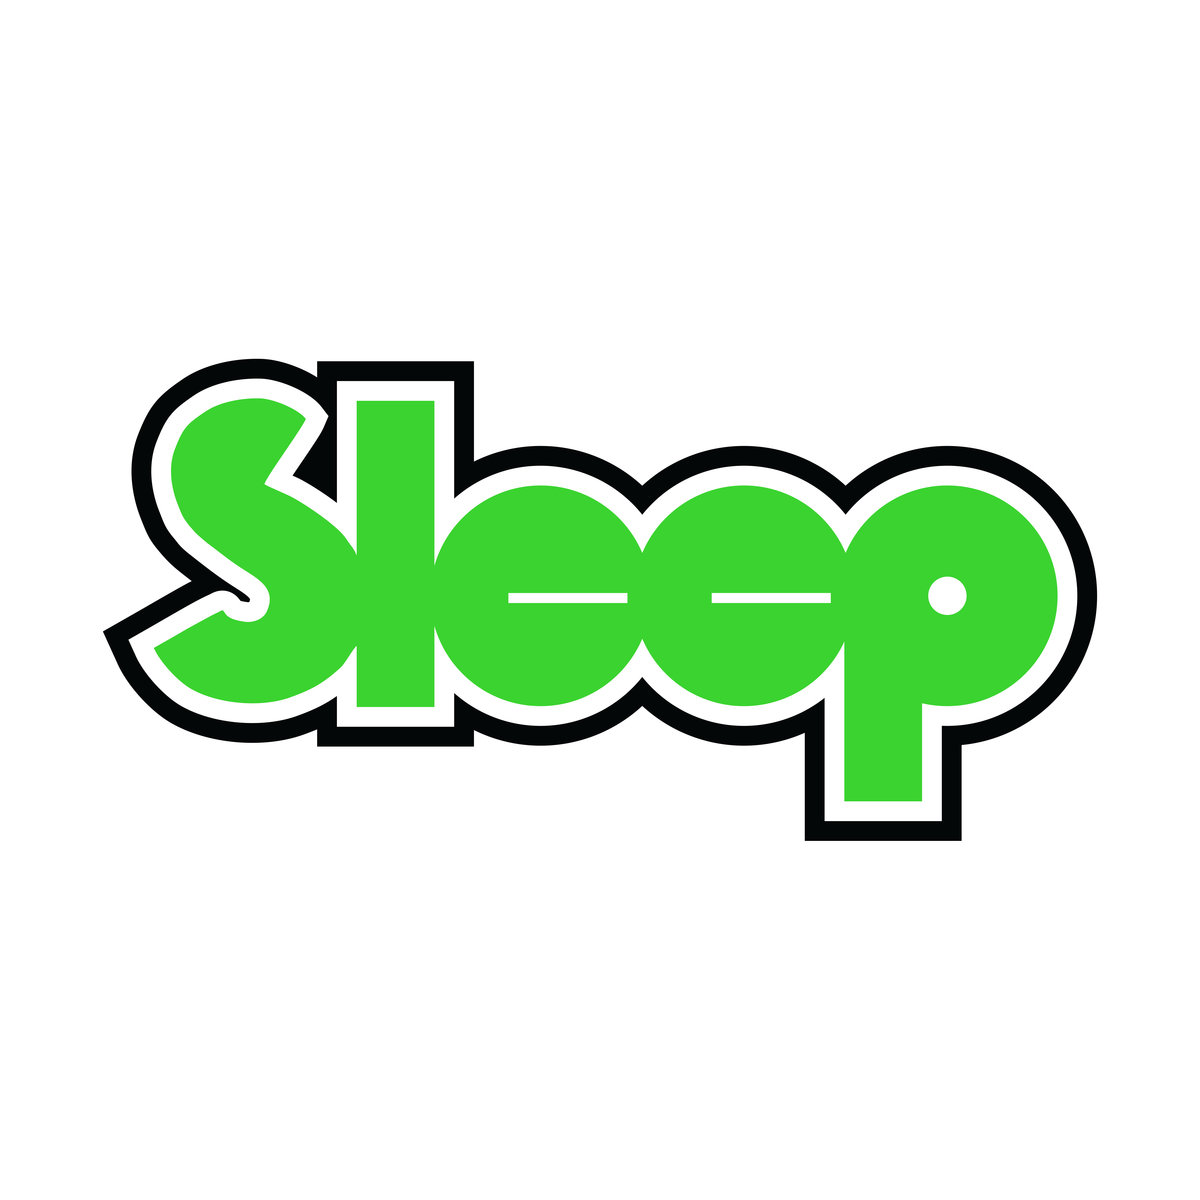 SLEEP - Leagues Beneath cover 